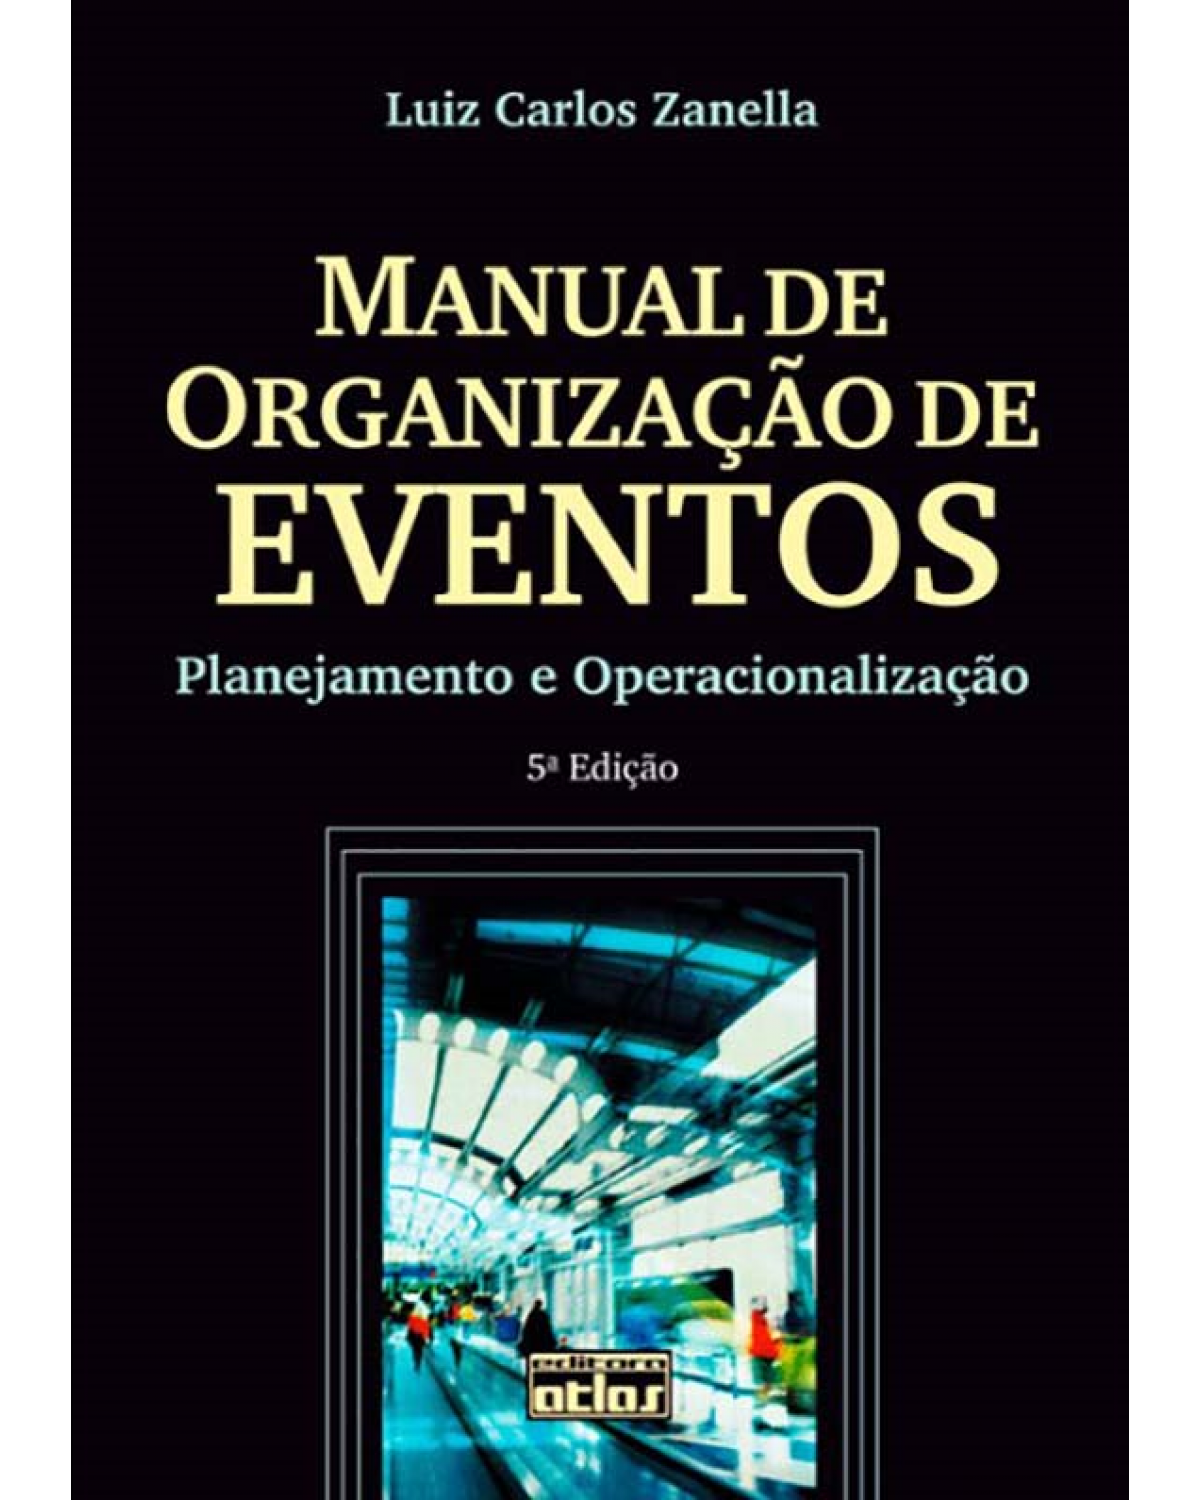 Manual de organização de eventos - Planejamento e operacionalização - 5ª Edição | 2012